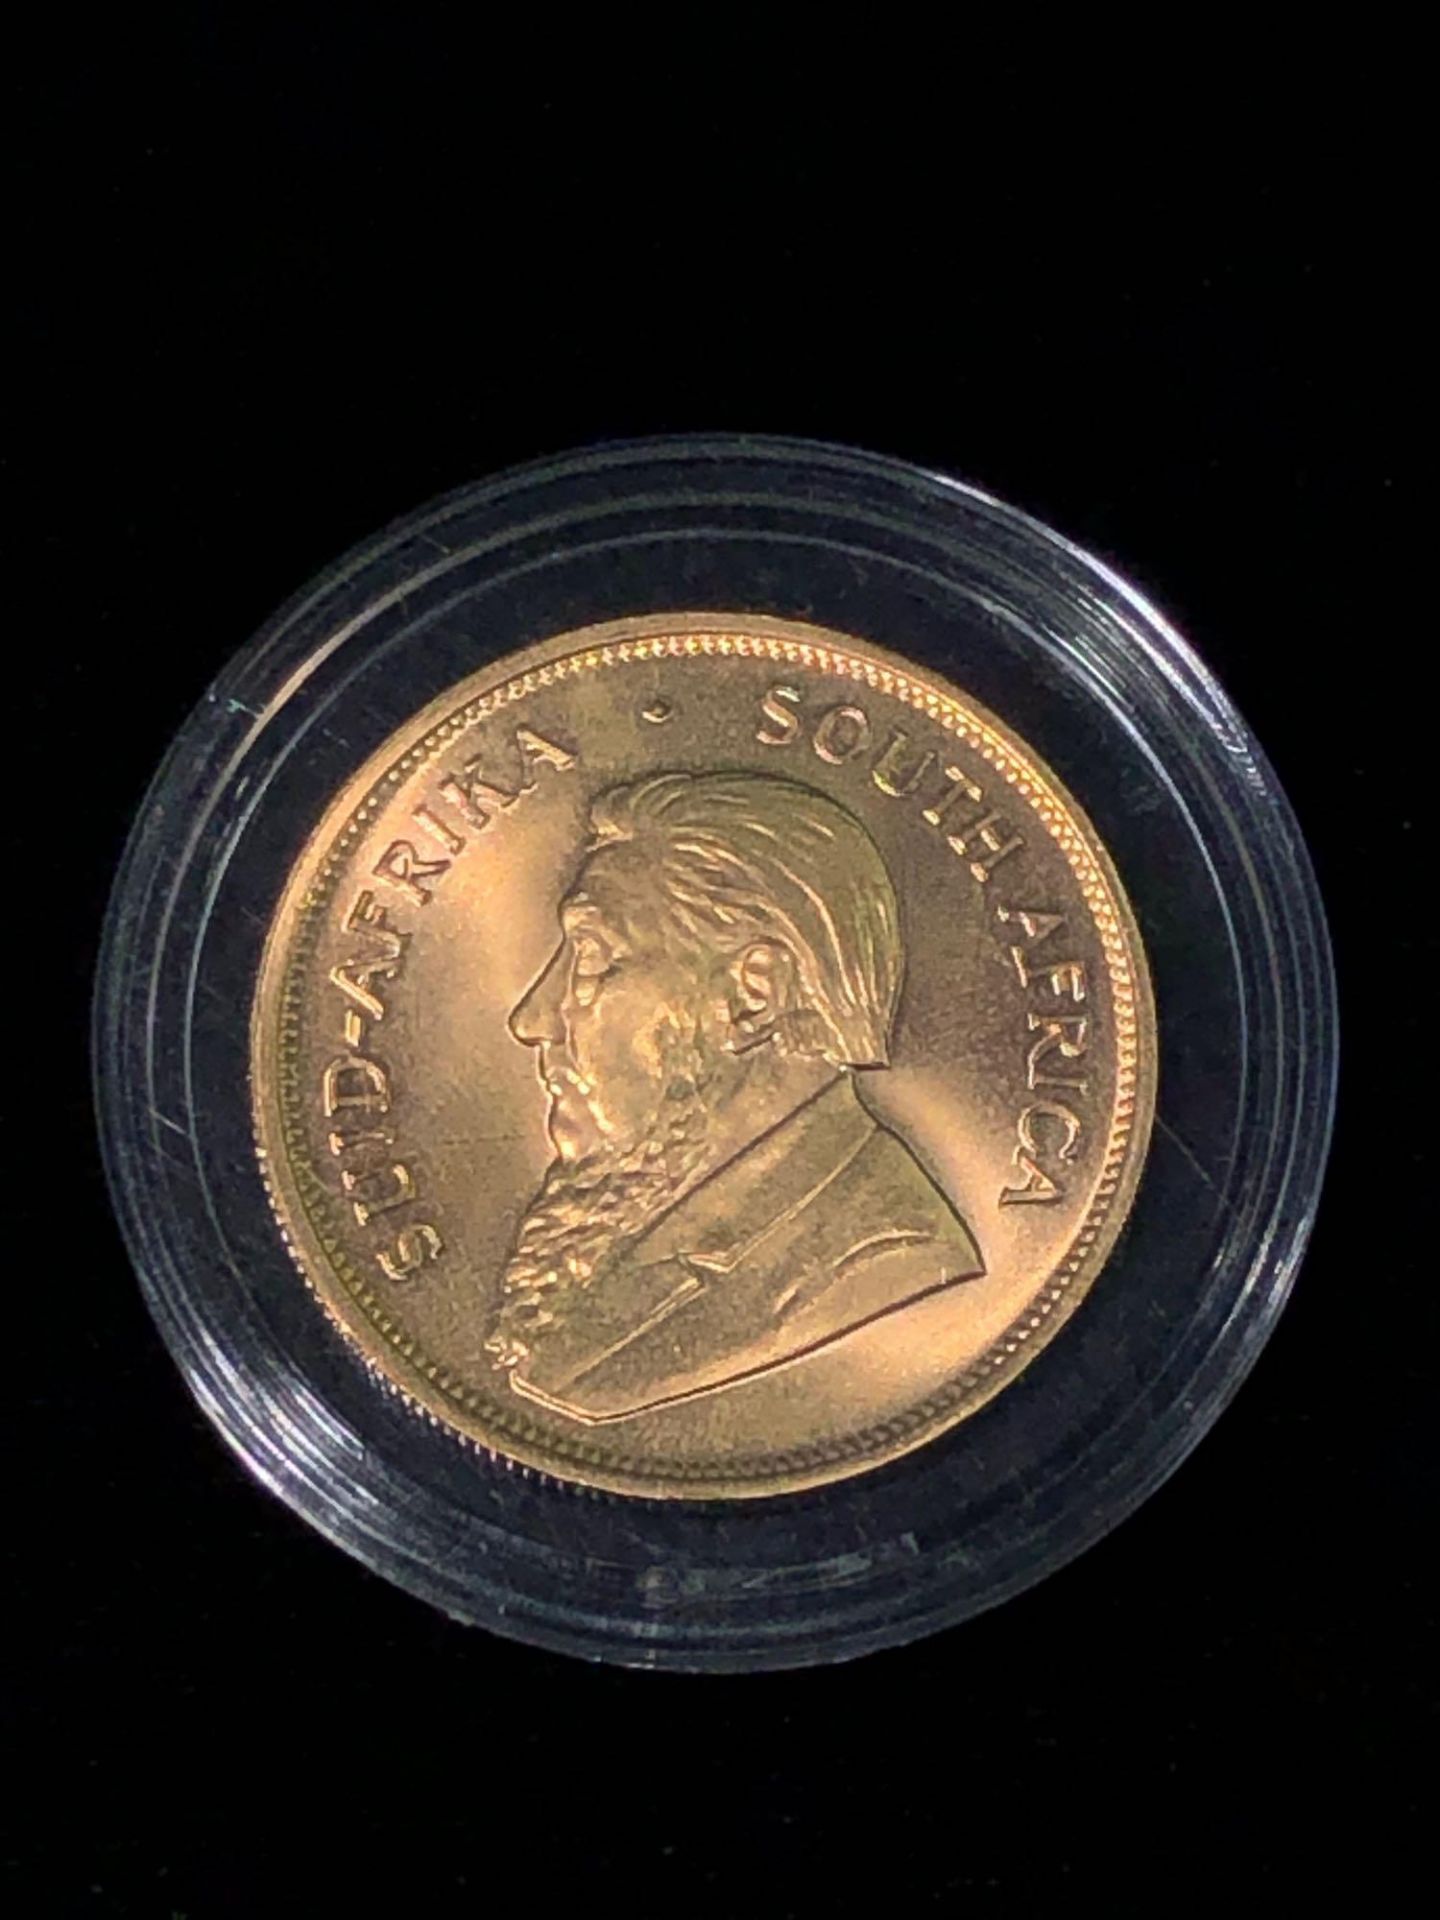 1983 1 OZT FINE GOLD KRUGERRAND COIN - Image 2 of 4